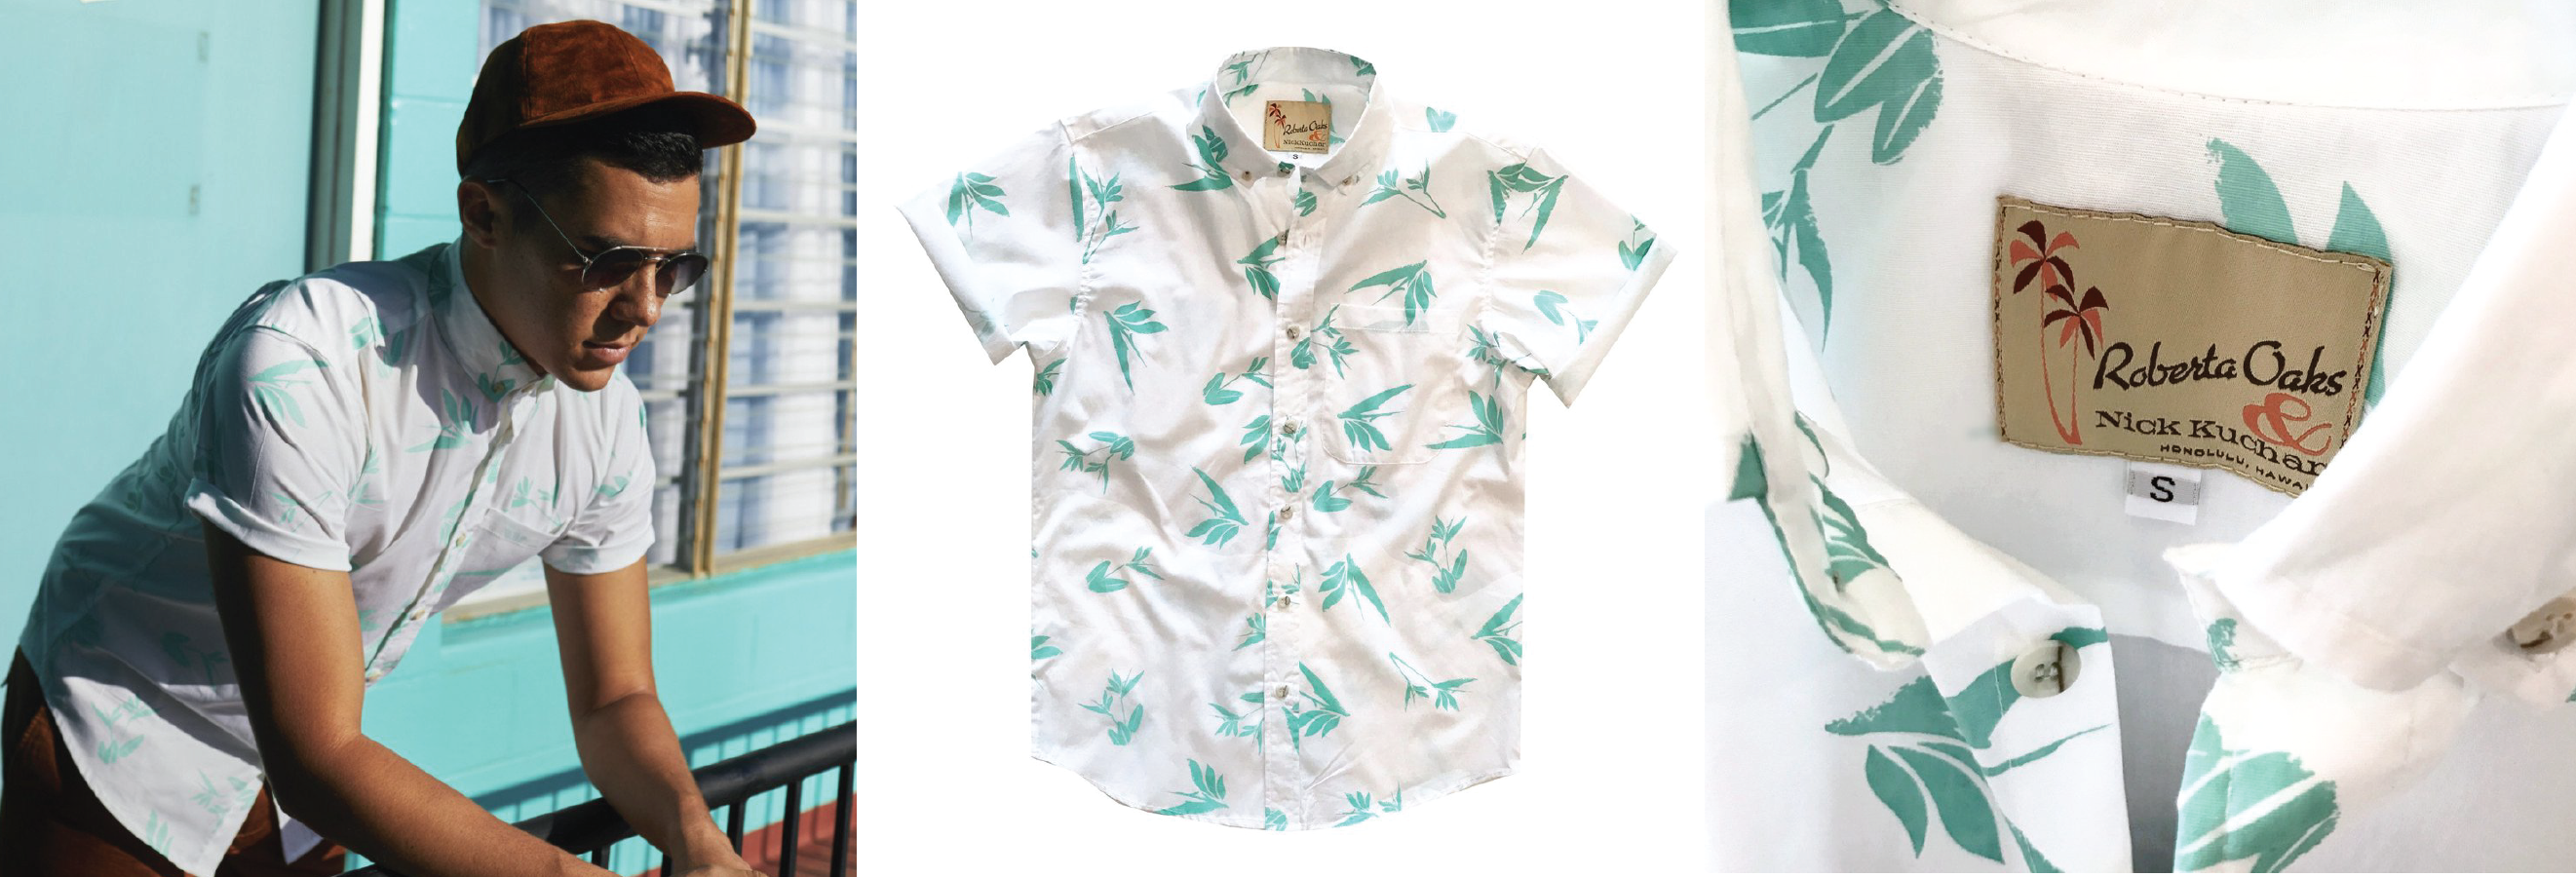 Nick Kuchar modern vintage aloha shirt